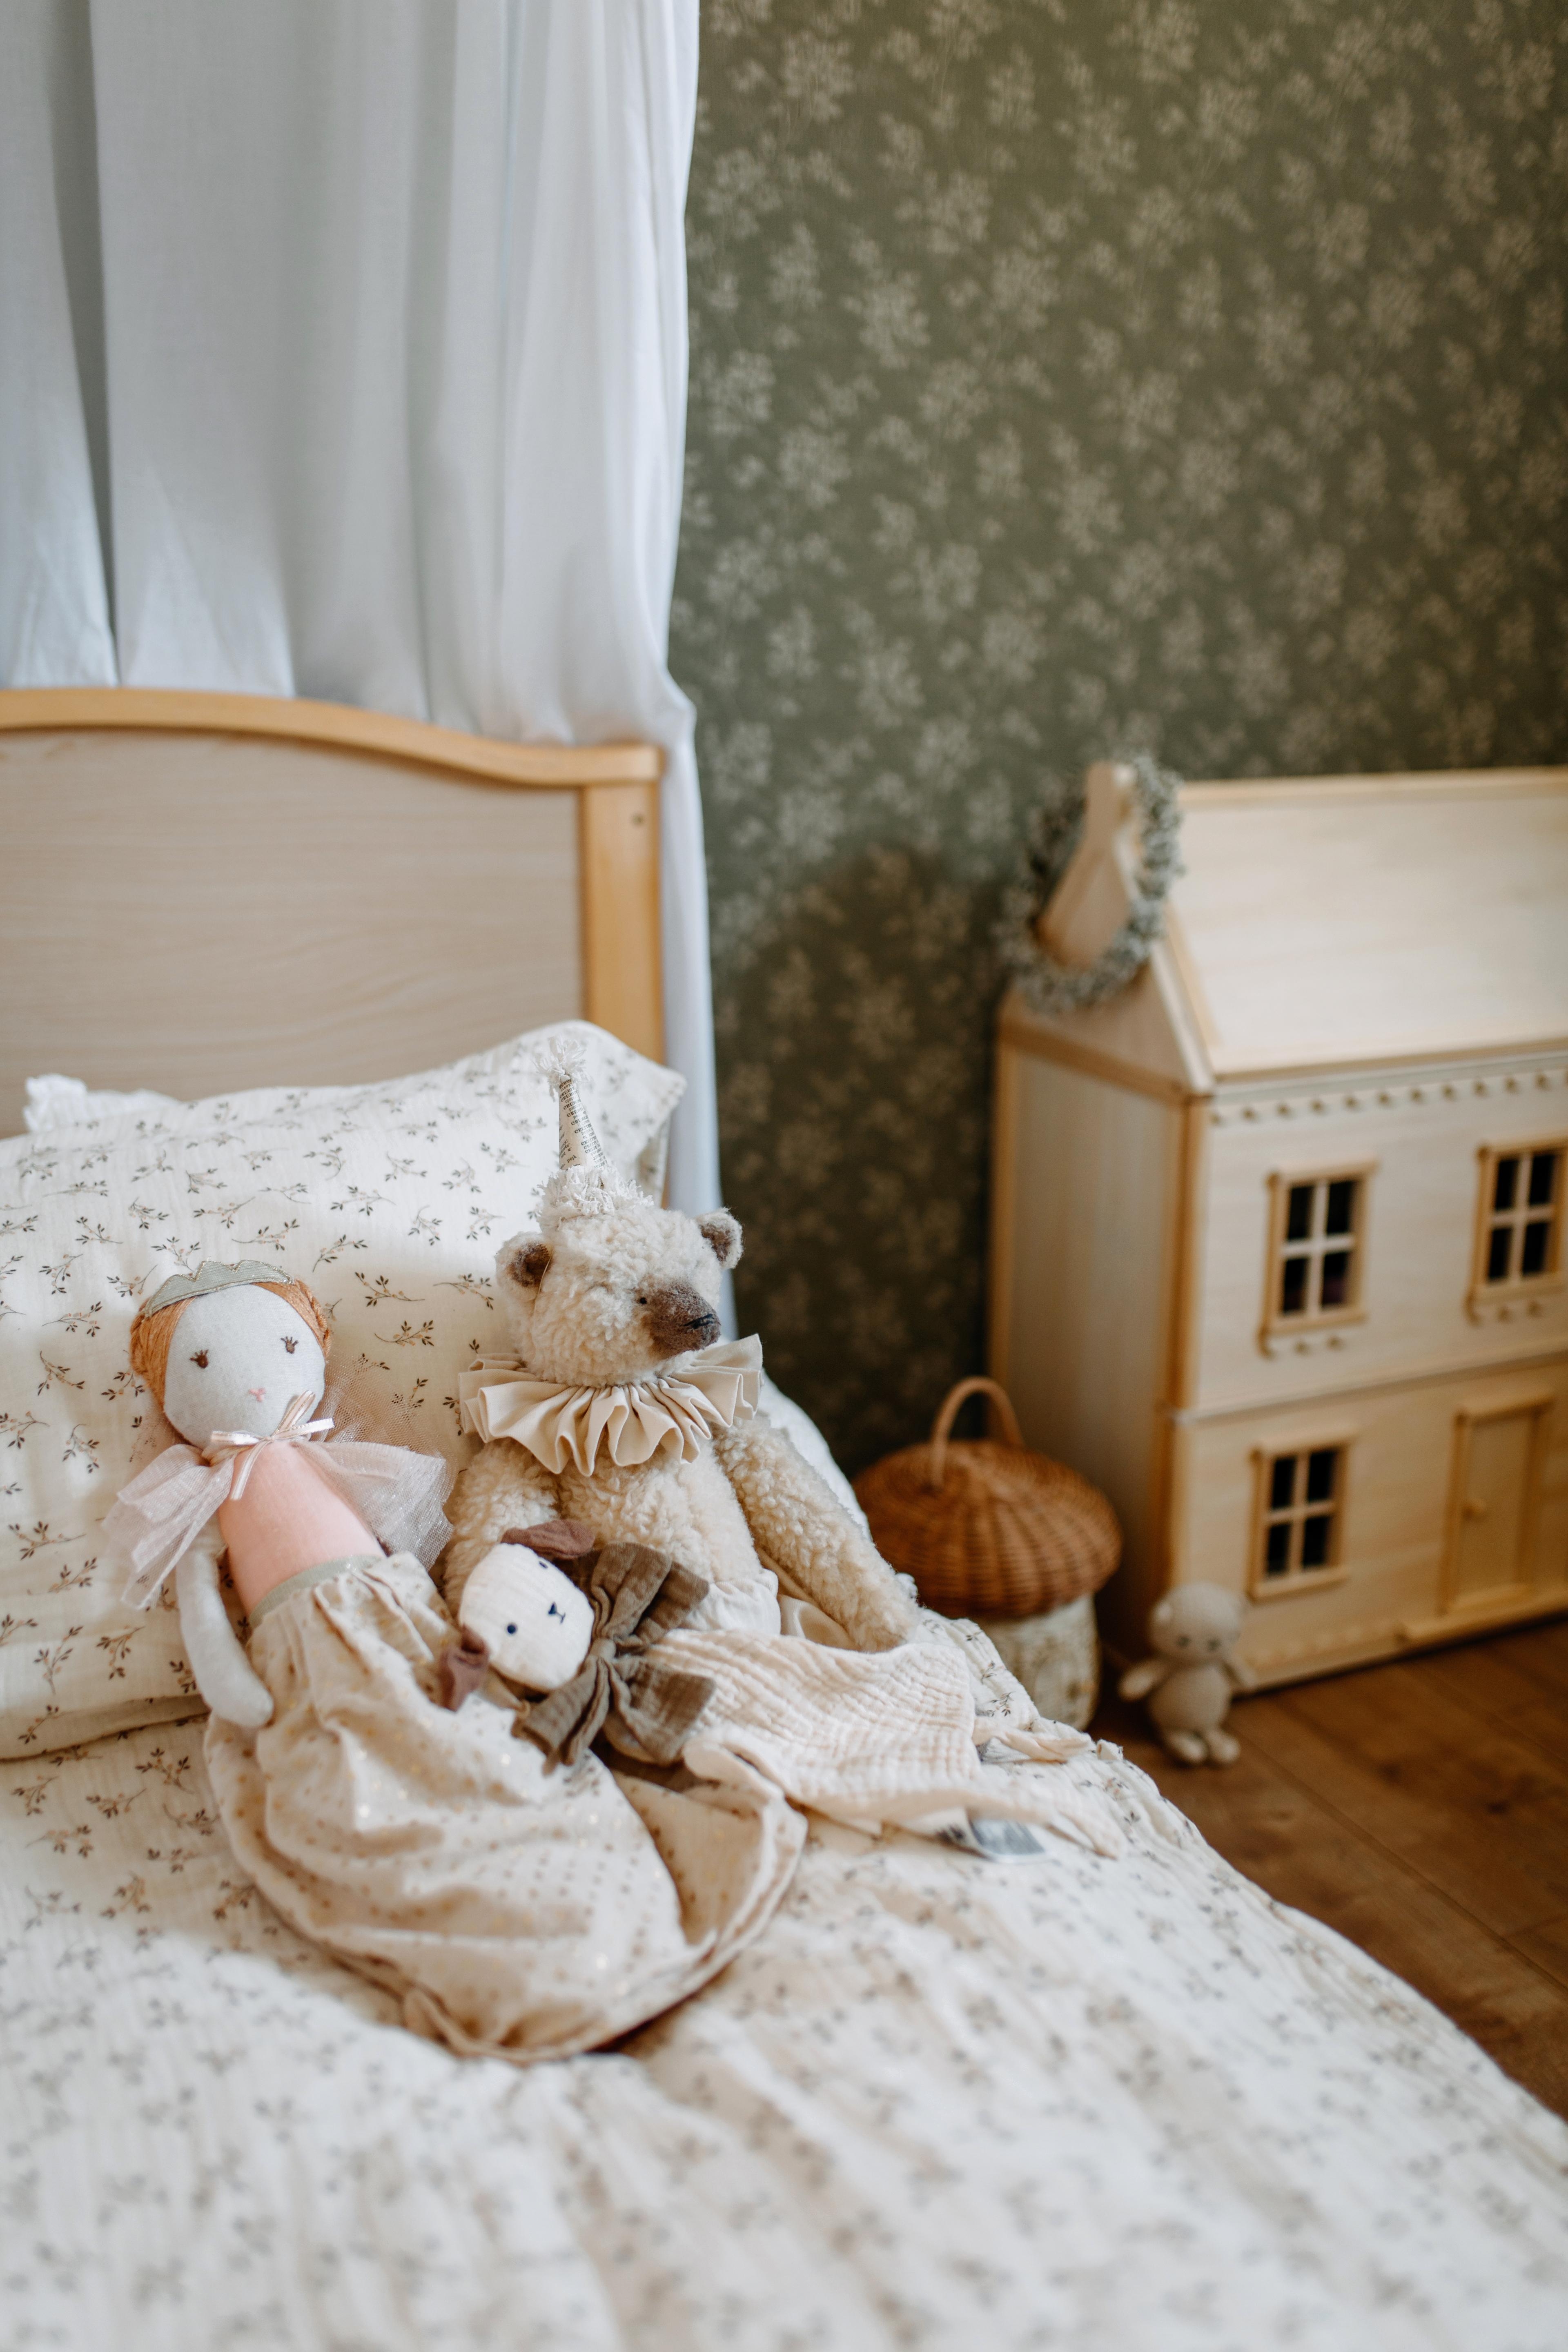 Neue Mustertapete im Kinderreich <3 #couchliebt #mustertapete #kinderzimmer #holzspielzeug #nostalgie